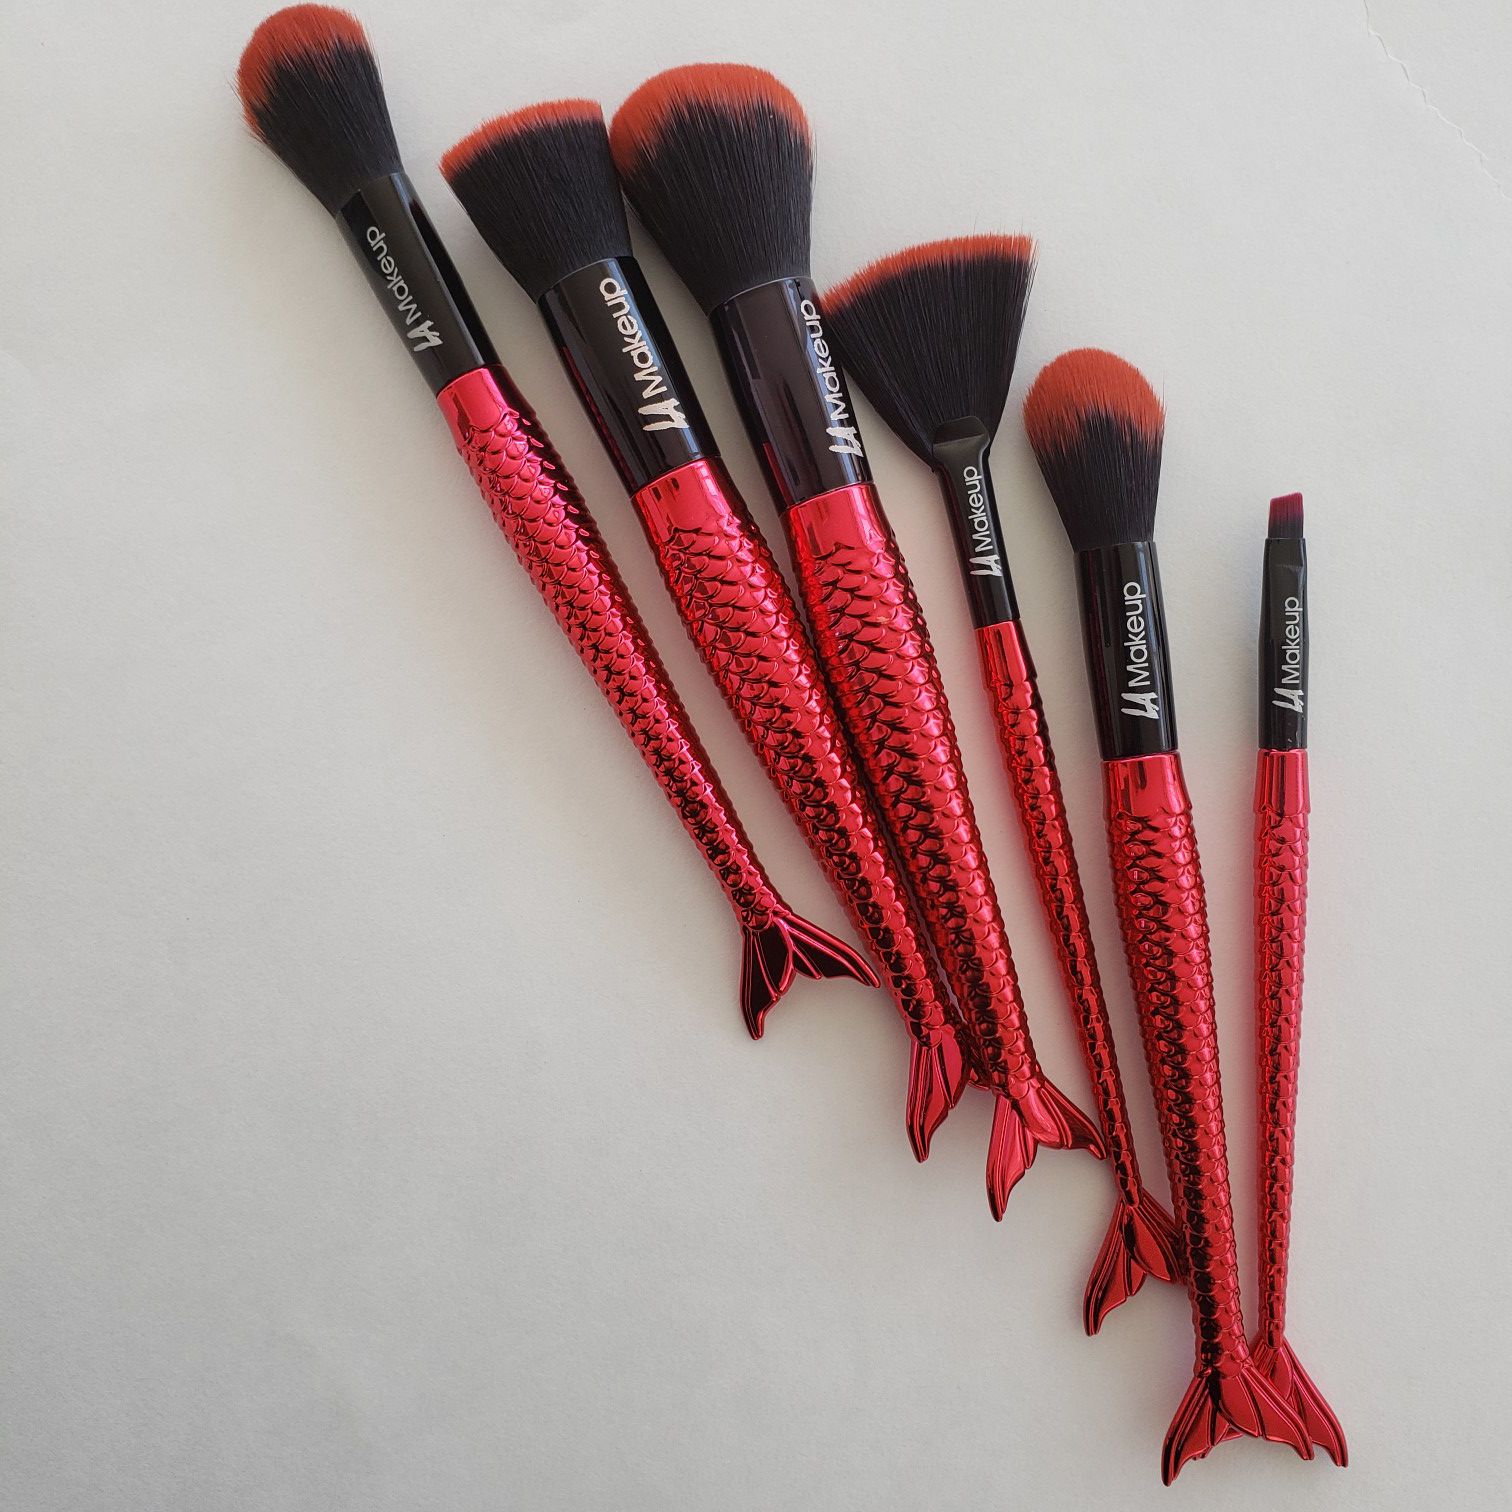 Red mermaid tail makeup brush set